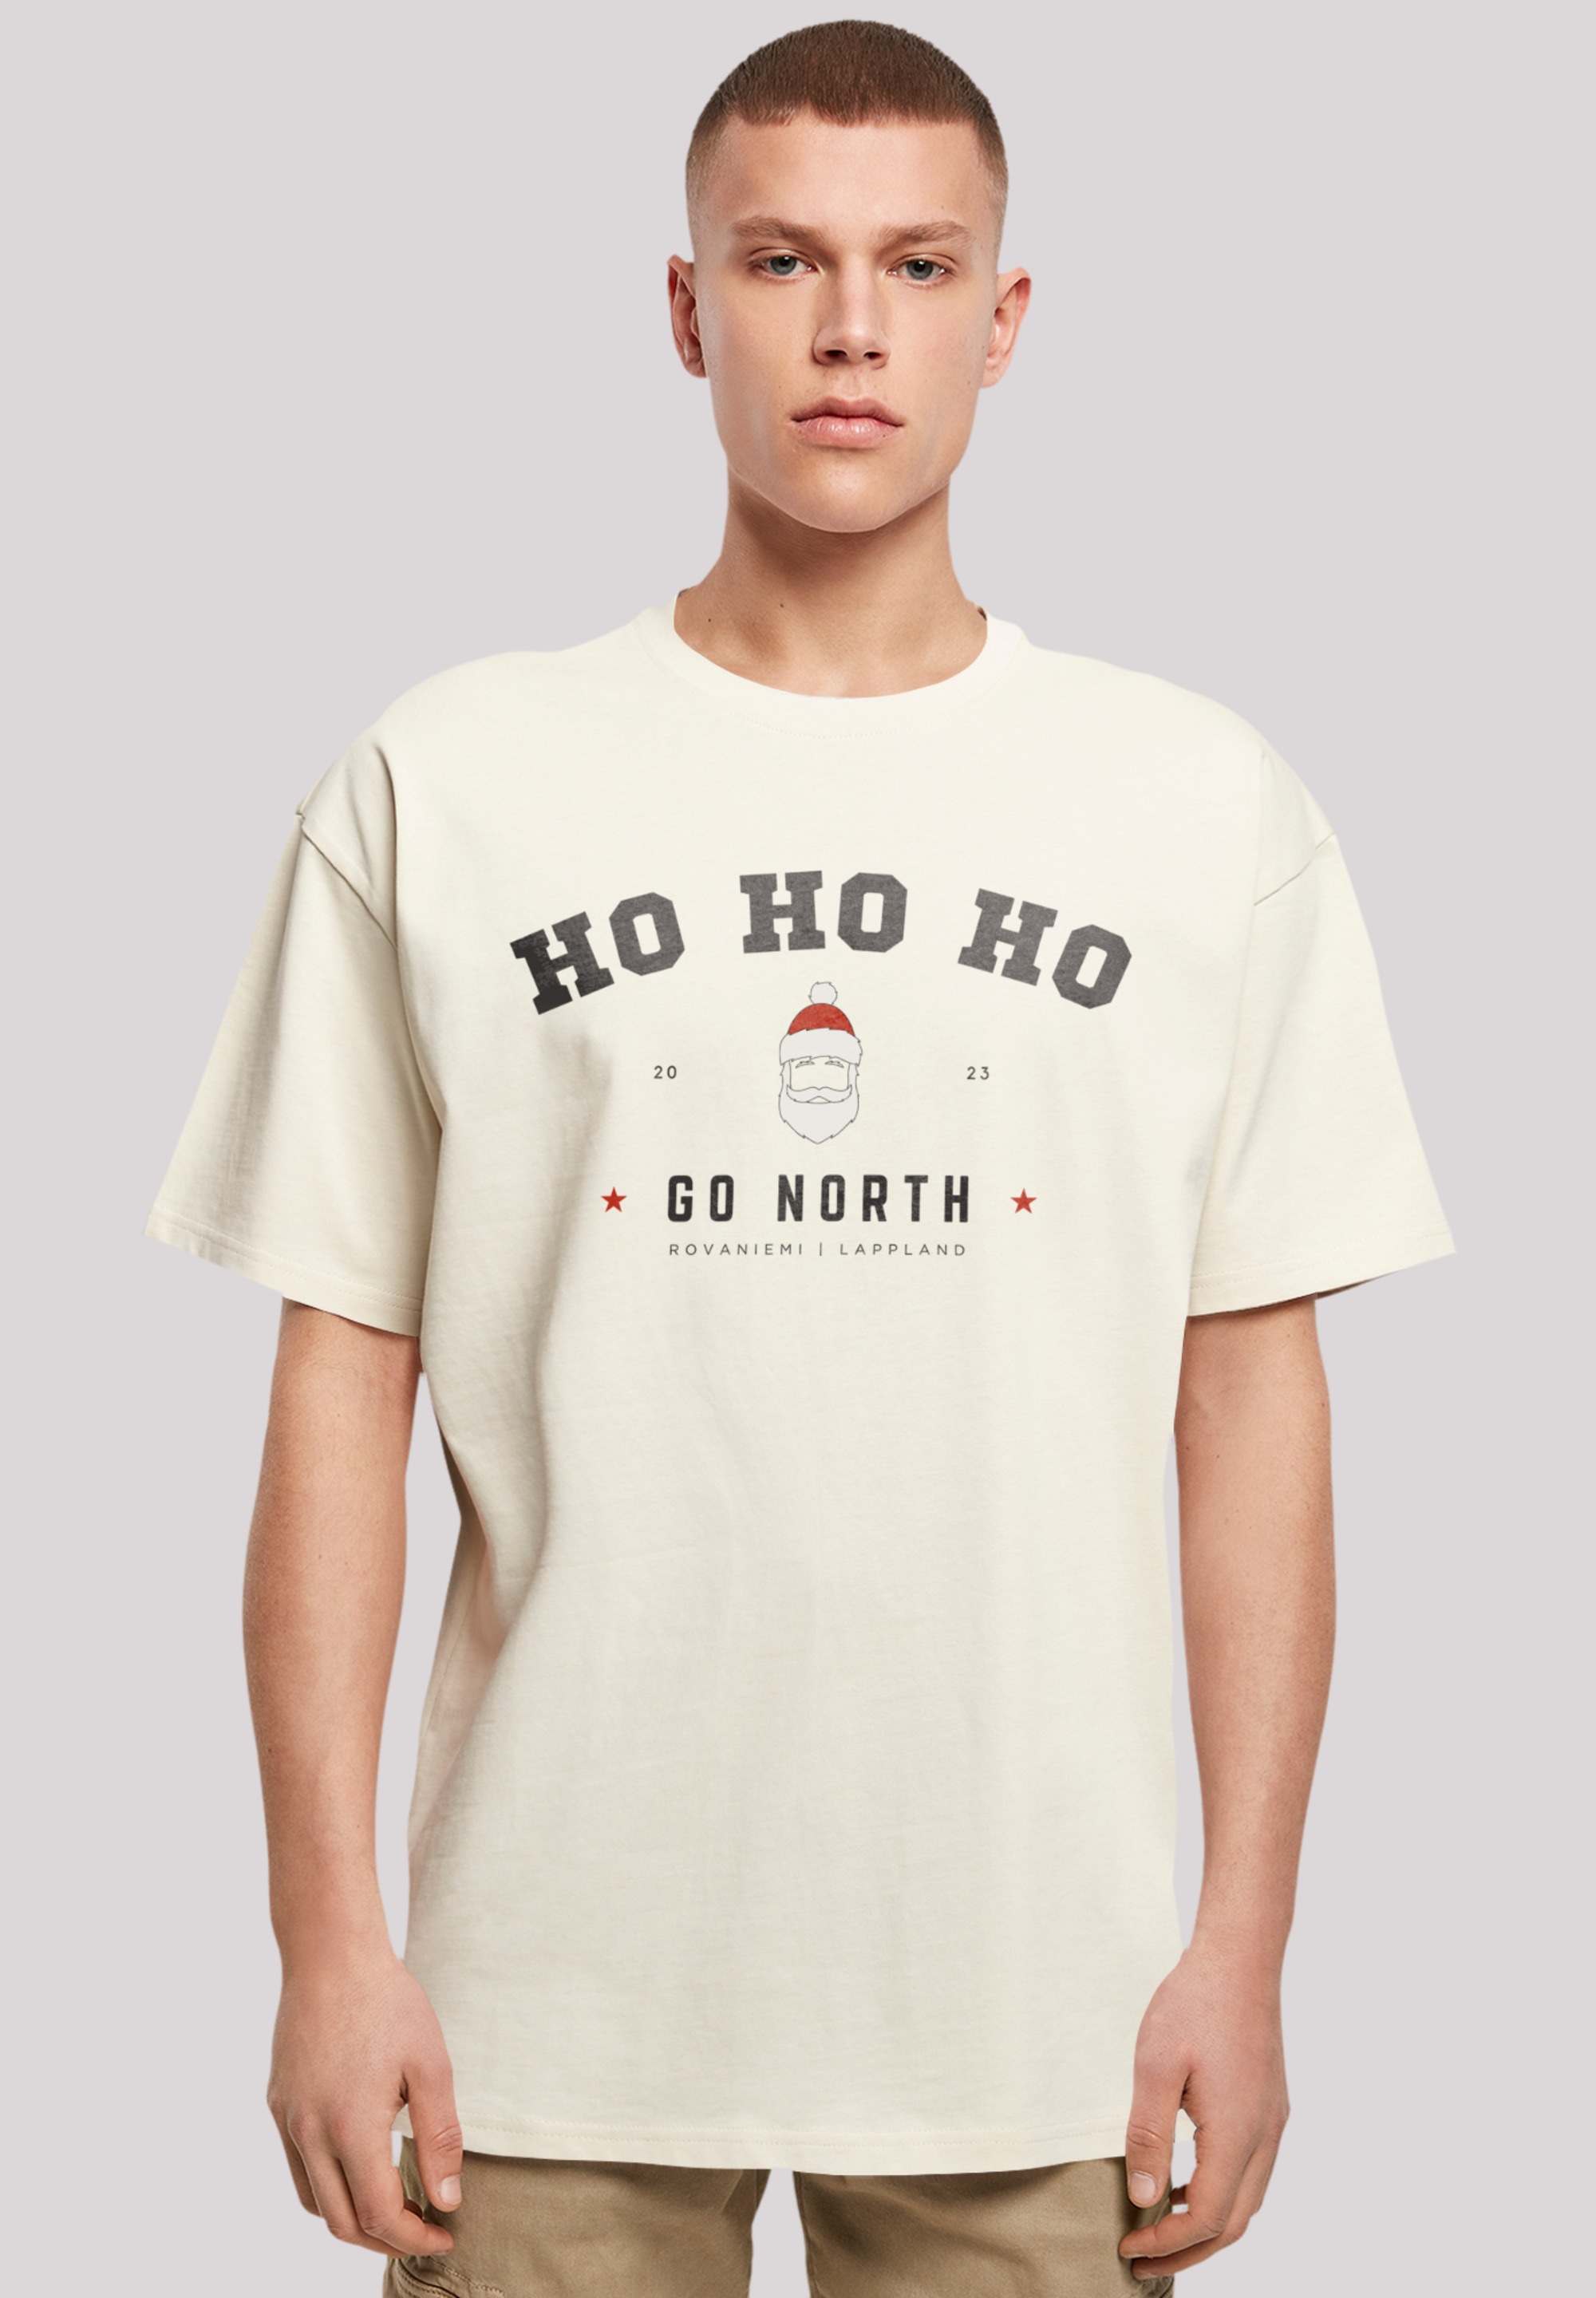 F4NT4STIC T-Shirt Logo Geschenk, ▷ »Ho Weihnachten, kaufen Ho | Santa BAUR Ho Claus Weihnachten«